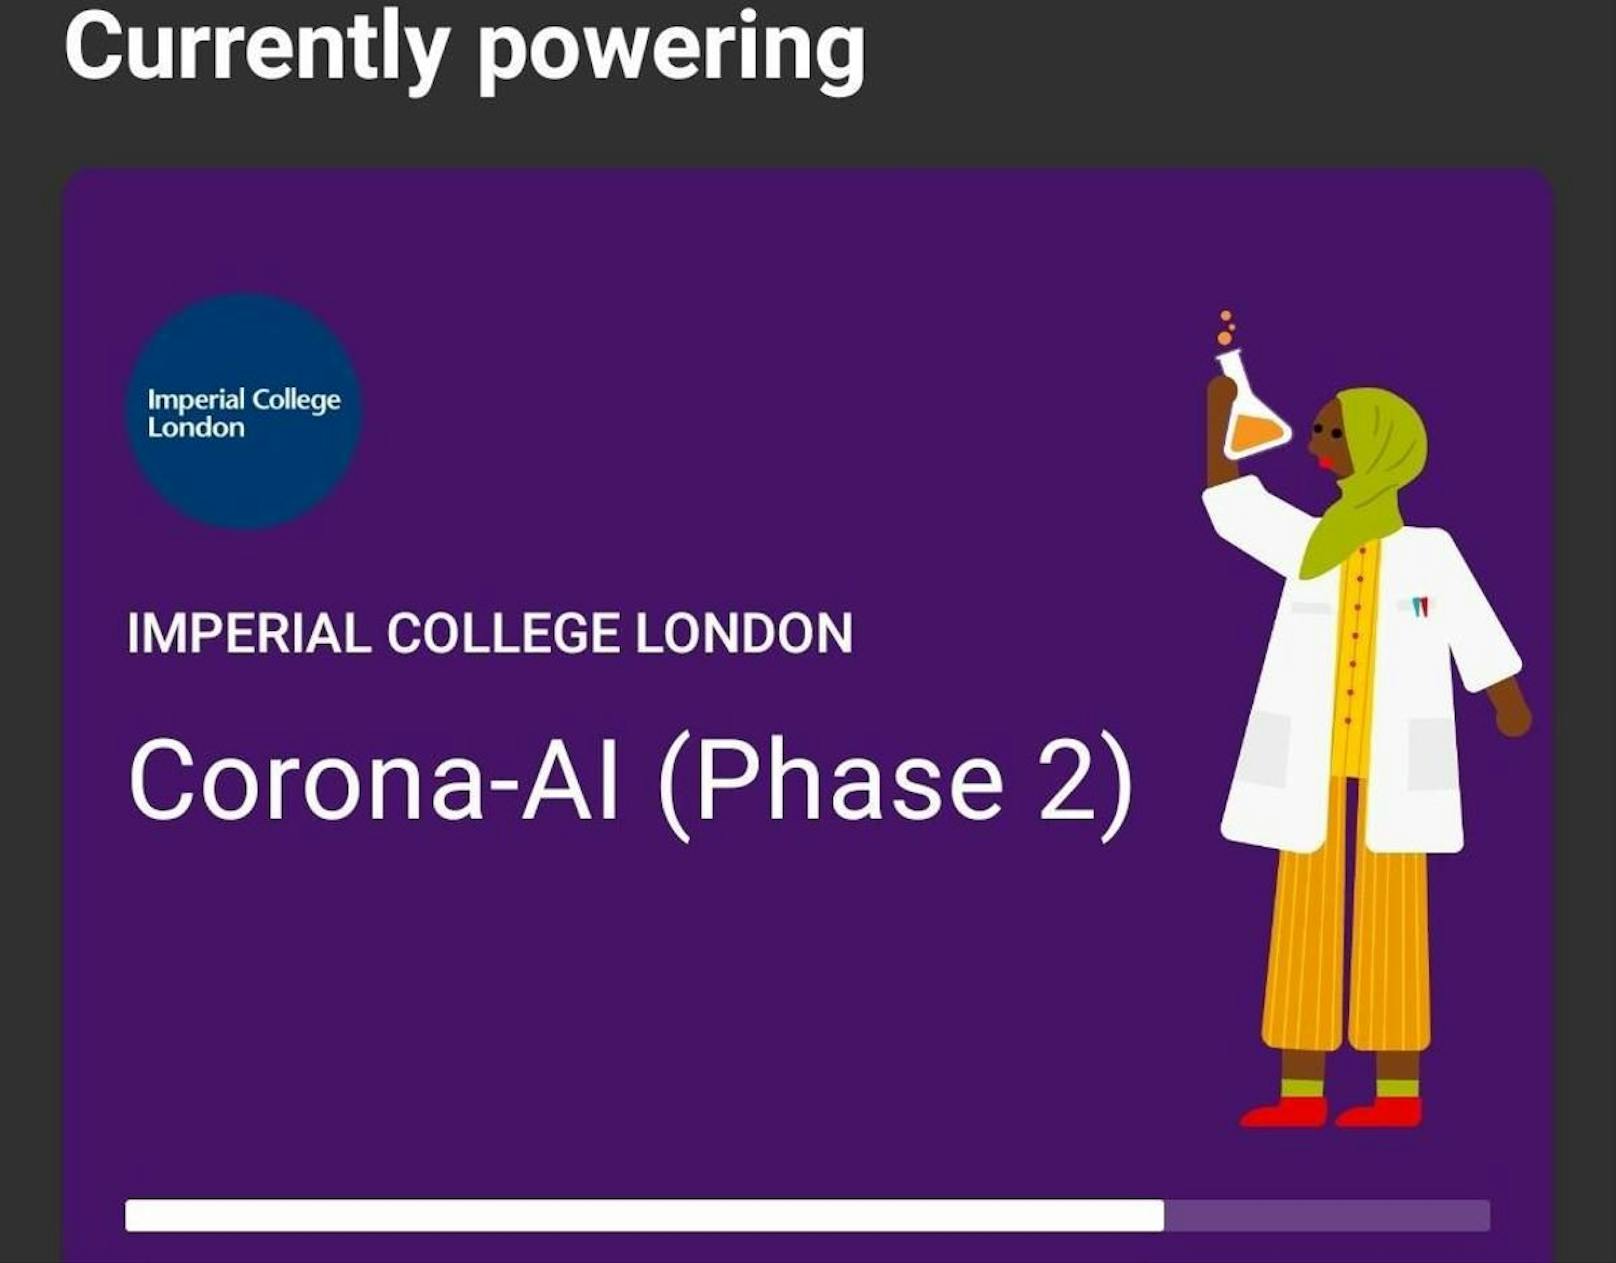 Augenblicklich unterstützten rund 100.000 Personen ein Corona-Forschungsprojekt des Imperial College London.